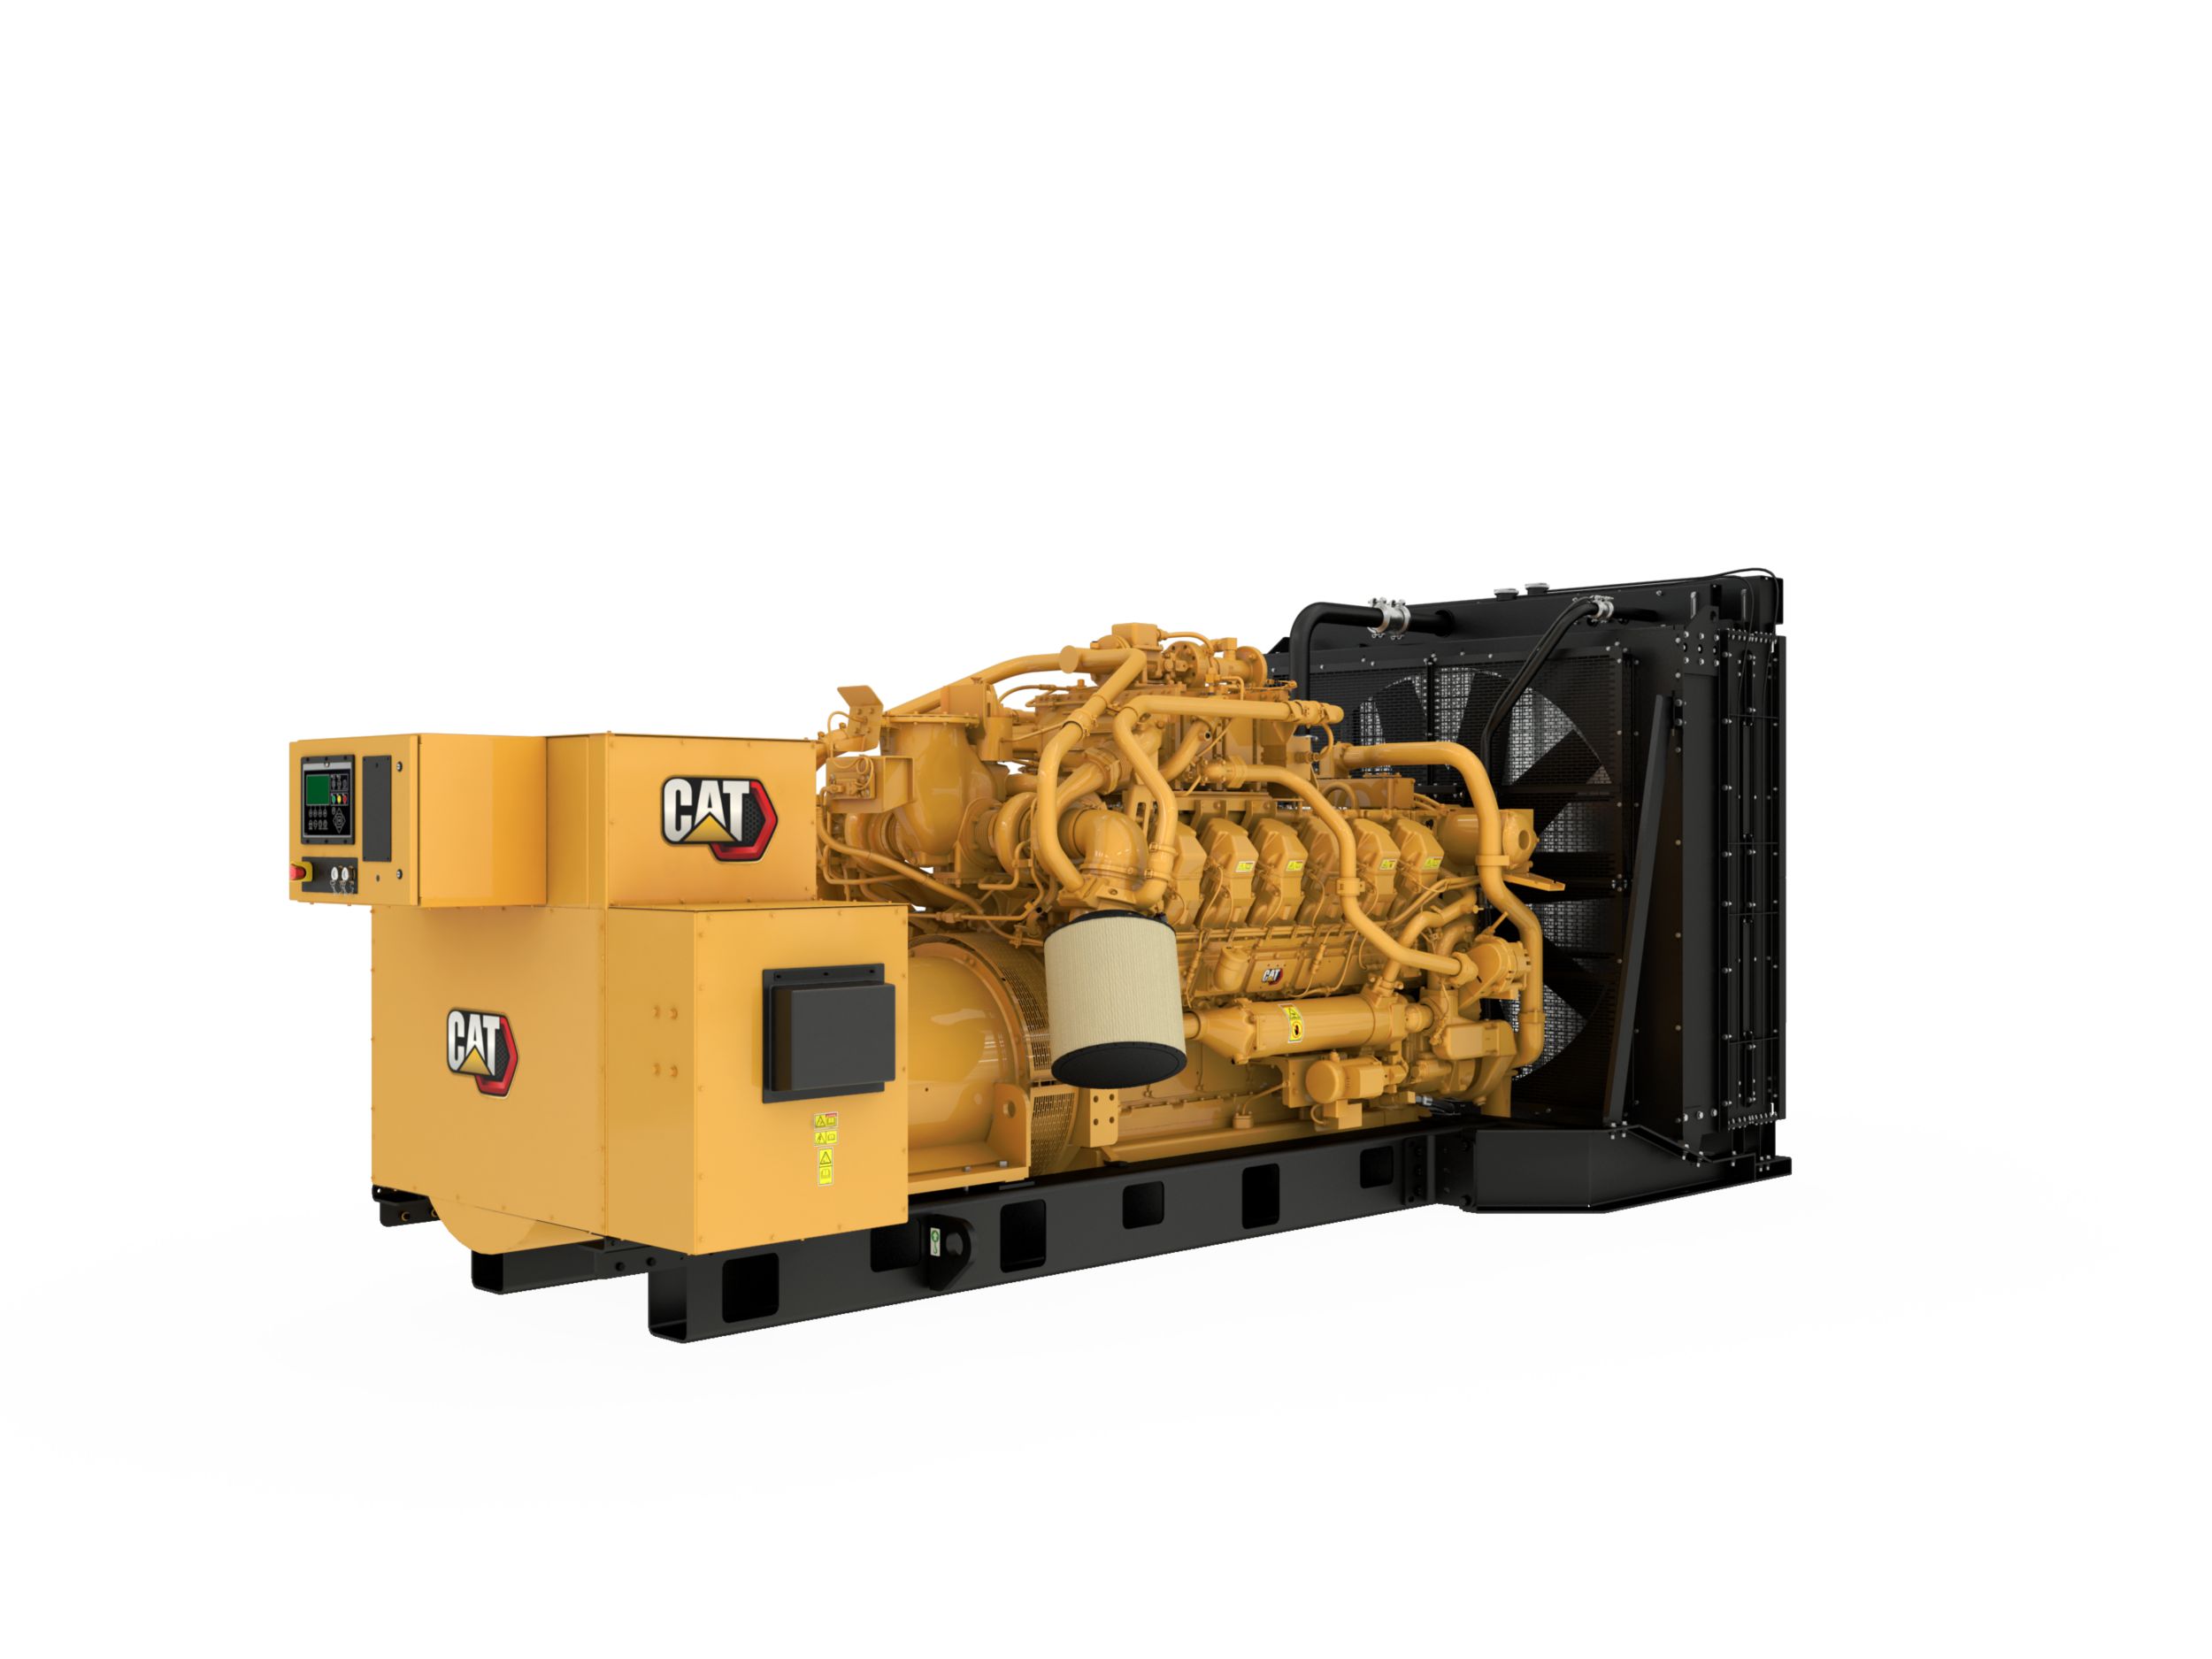 G3512 750kW Gas Generator Set